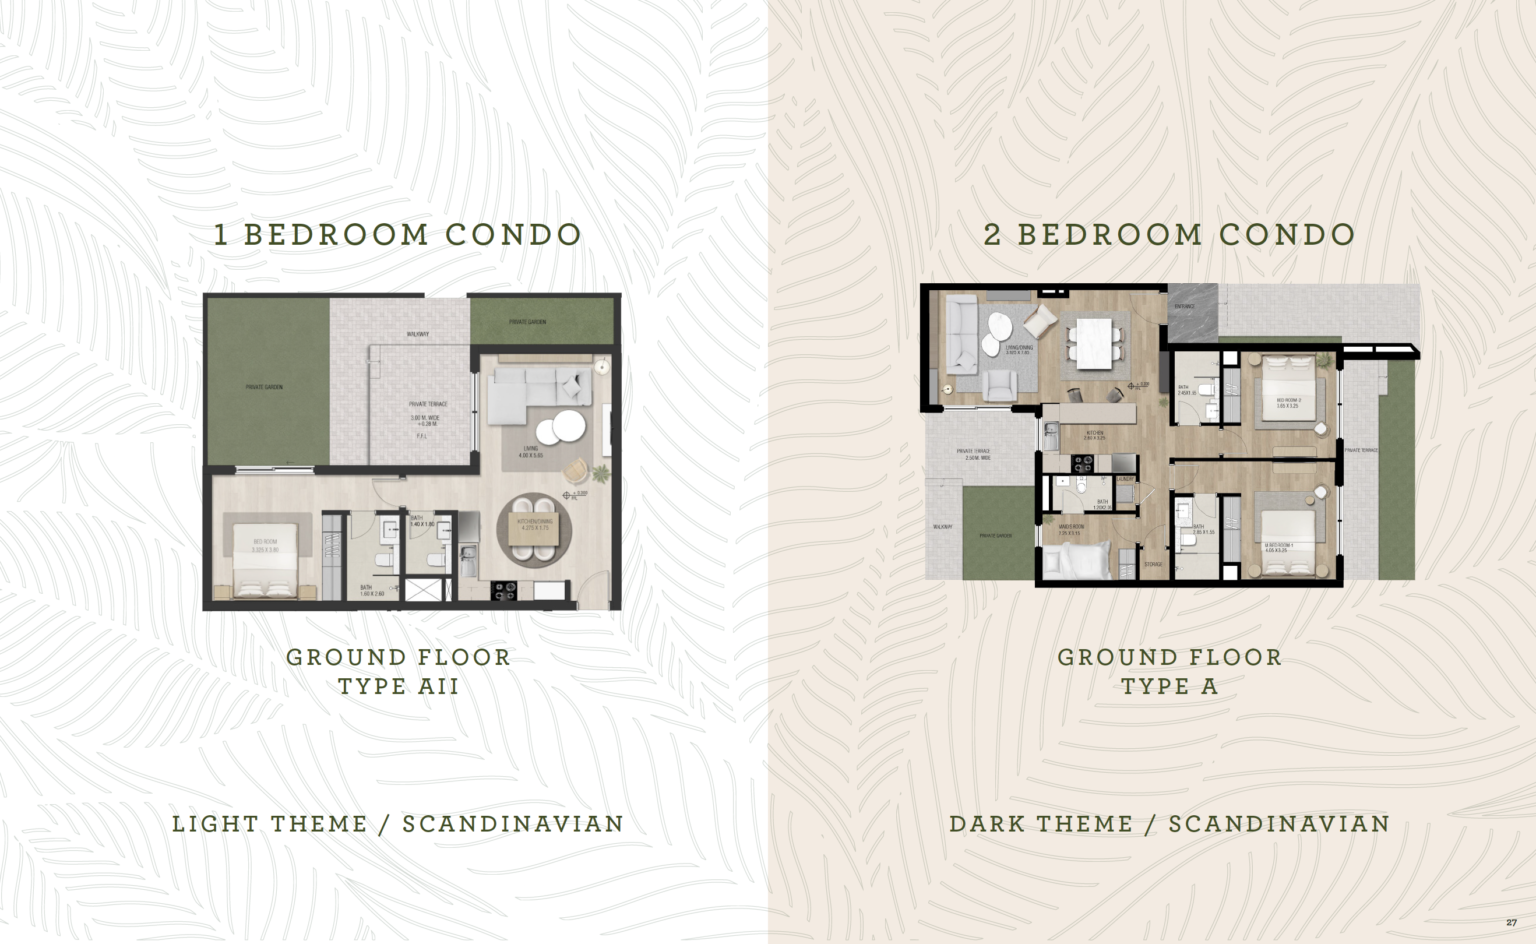 1 bedroom and 2 bedroom condo